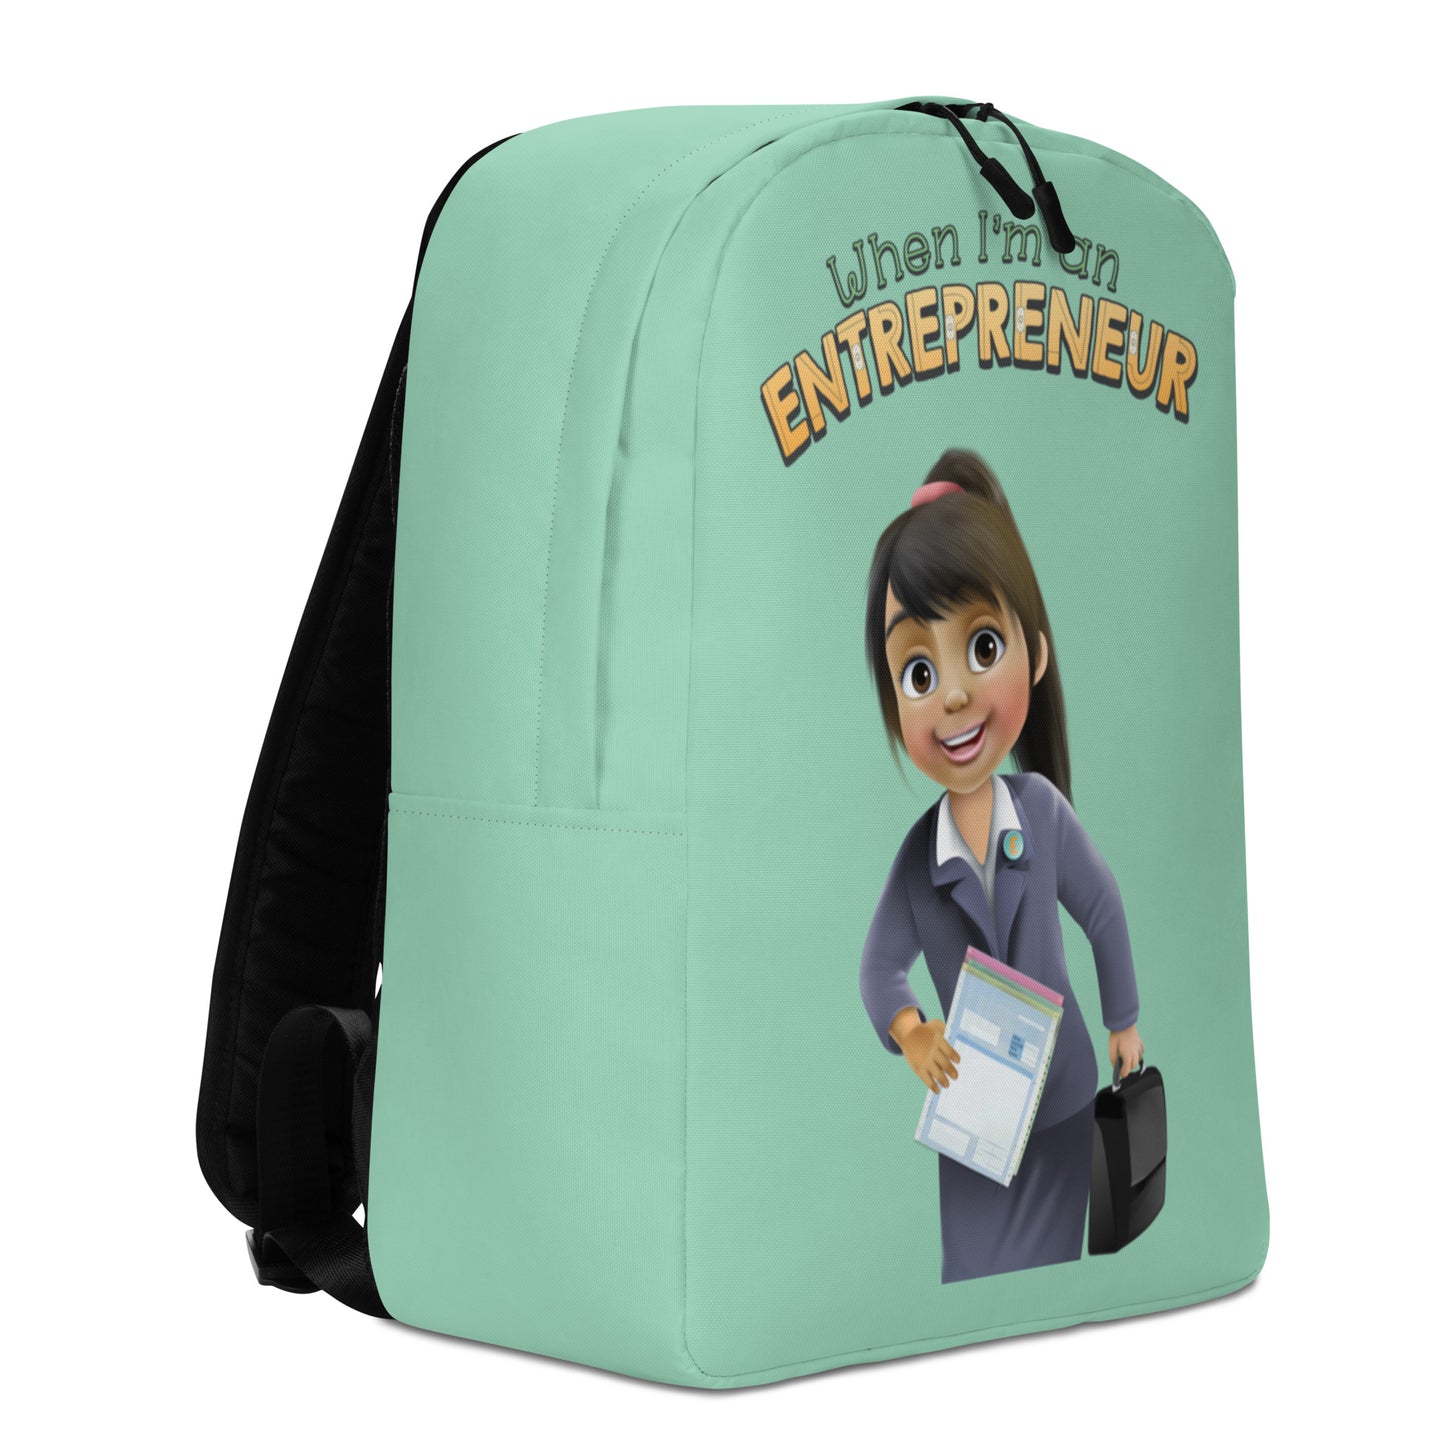 The best-seller smart future CEO, entrepreneur or millionaire girls' backpack.